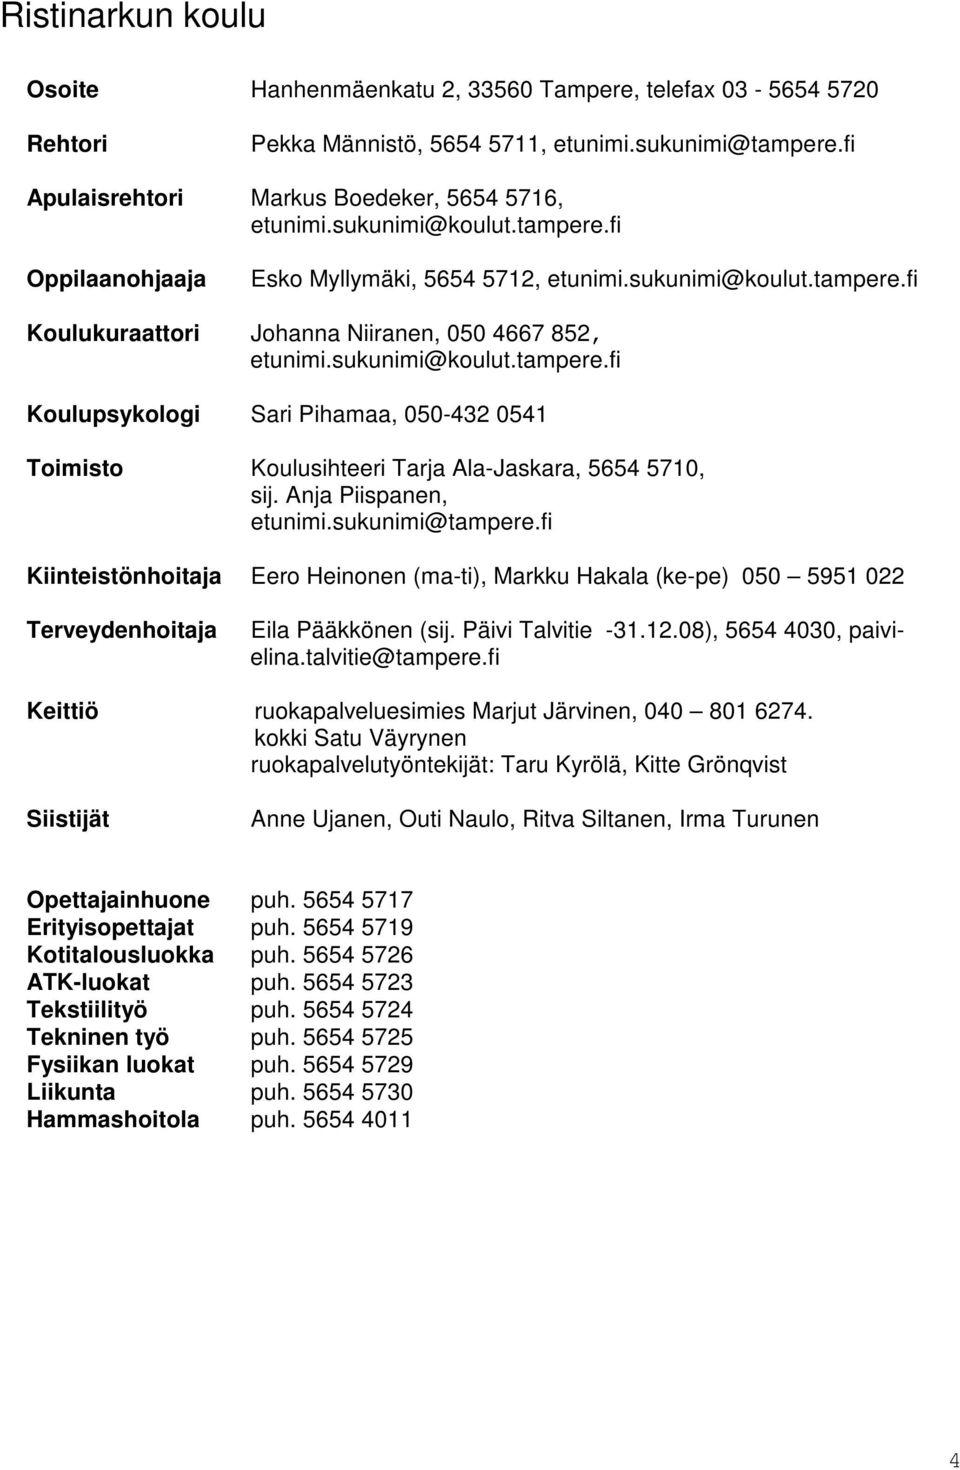 Anja Piispanen, etunimi.sukunimi@tampere.fi Kiinteistönhoitaja Eero Heinonen (ma-ti), Markku Hakala (ke-pe) 050 5951 022 Terveydenhoitaja Eila Pääkkönen (sij. Päivi Talvitie -31.12.